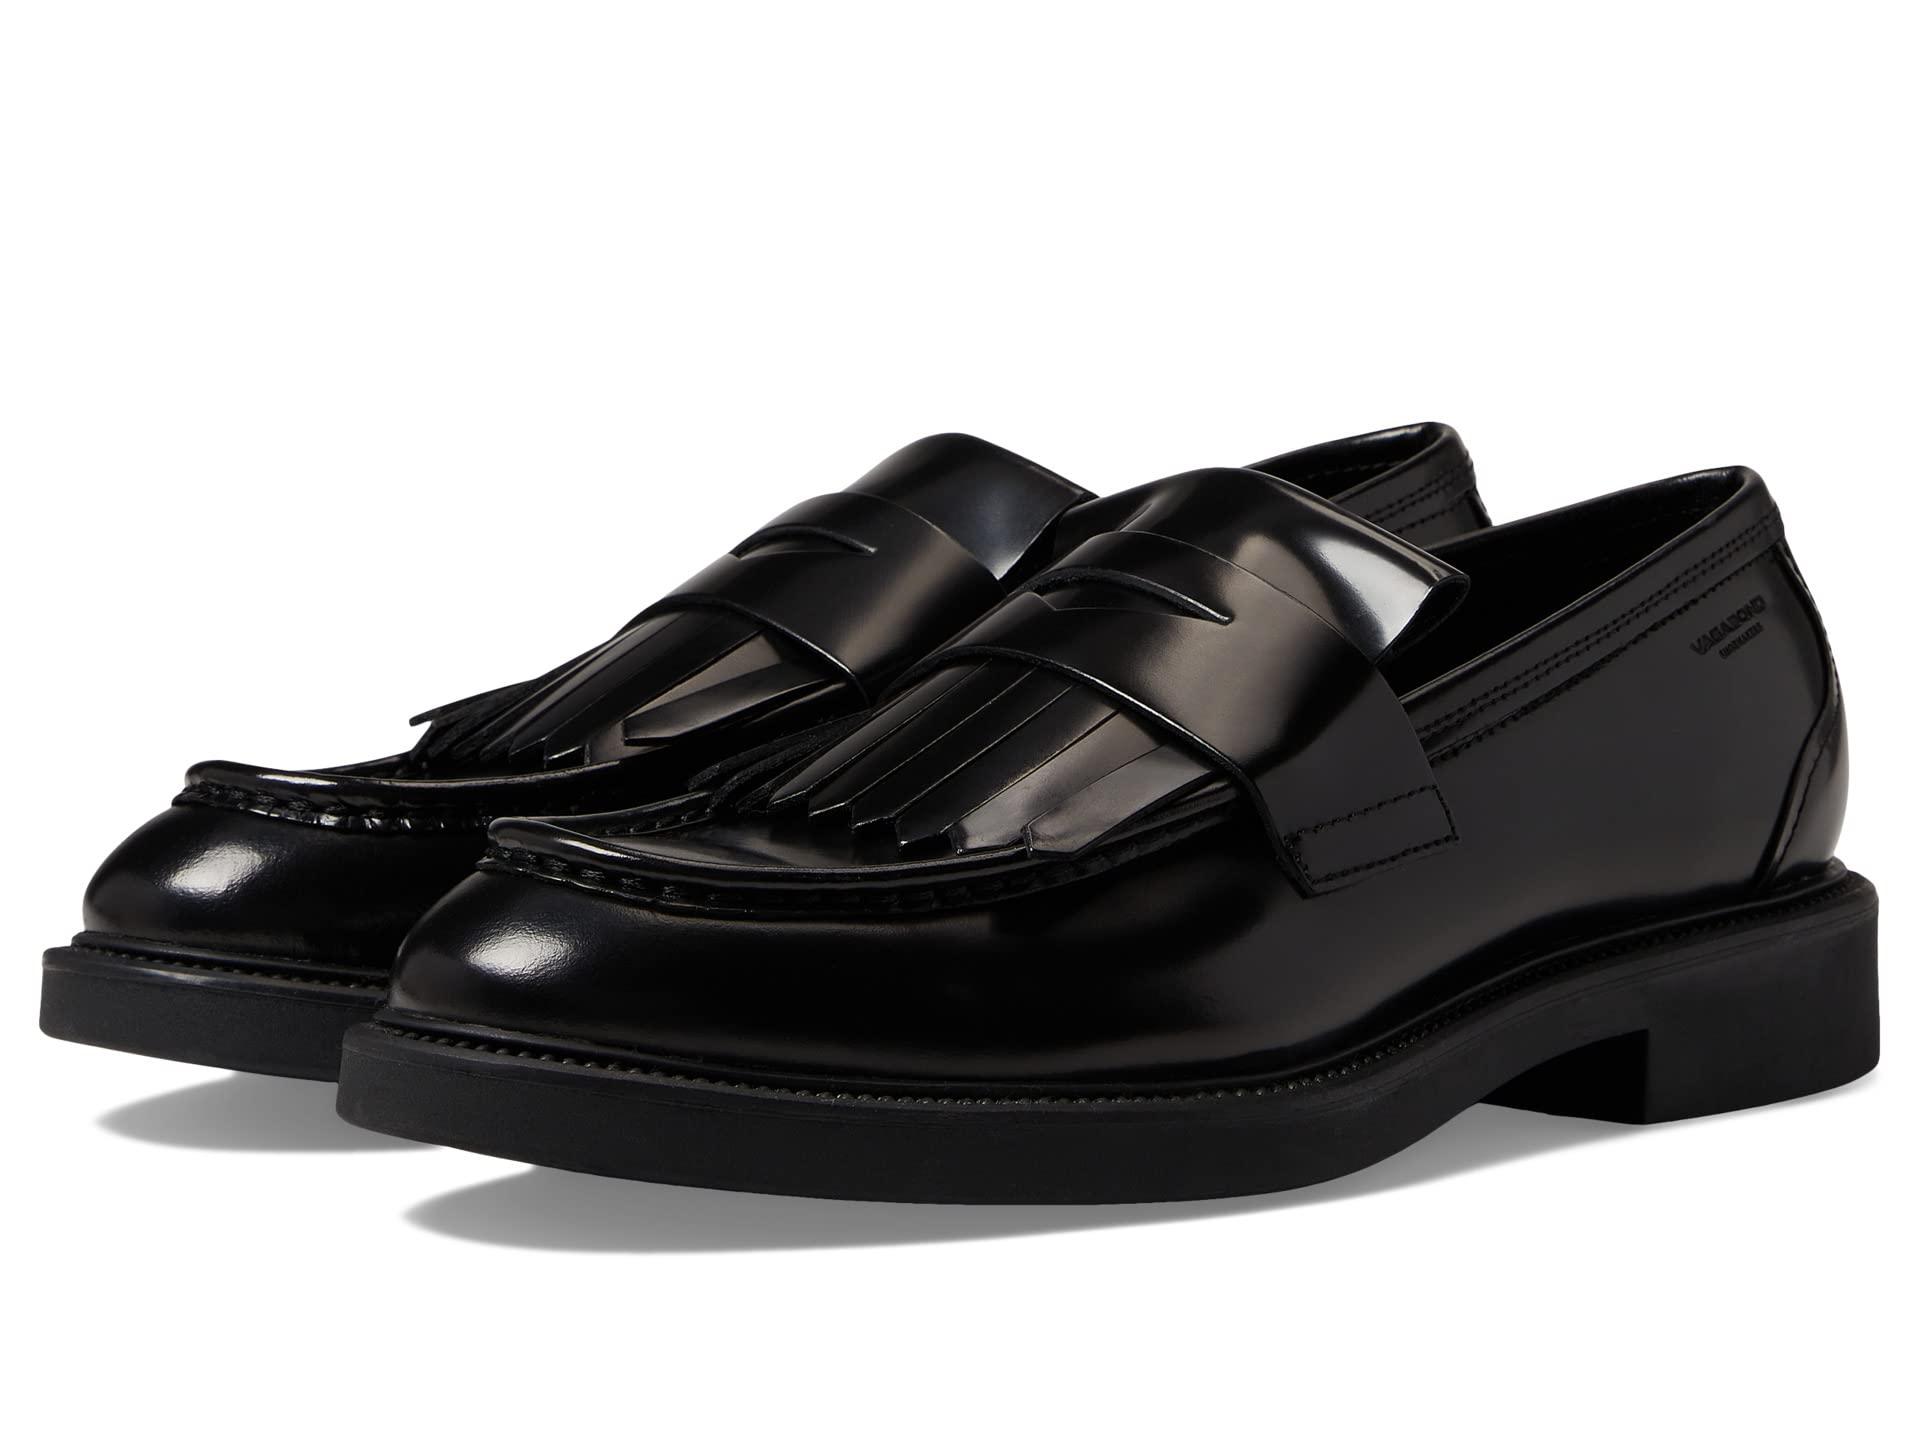 Vagabond Shoemakers Alex Polished Leather Loafer With Fringe in Black ...